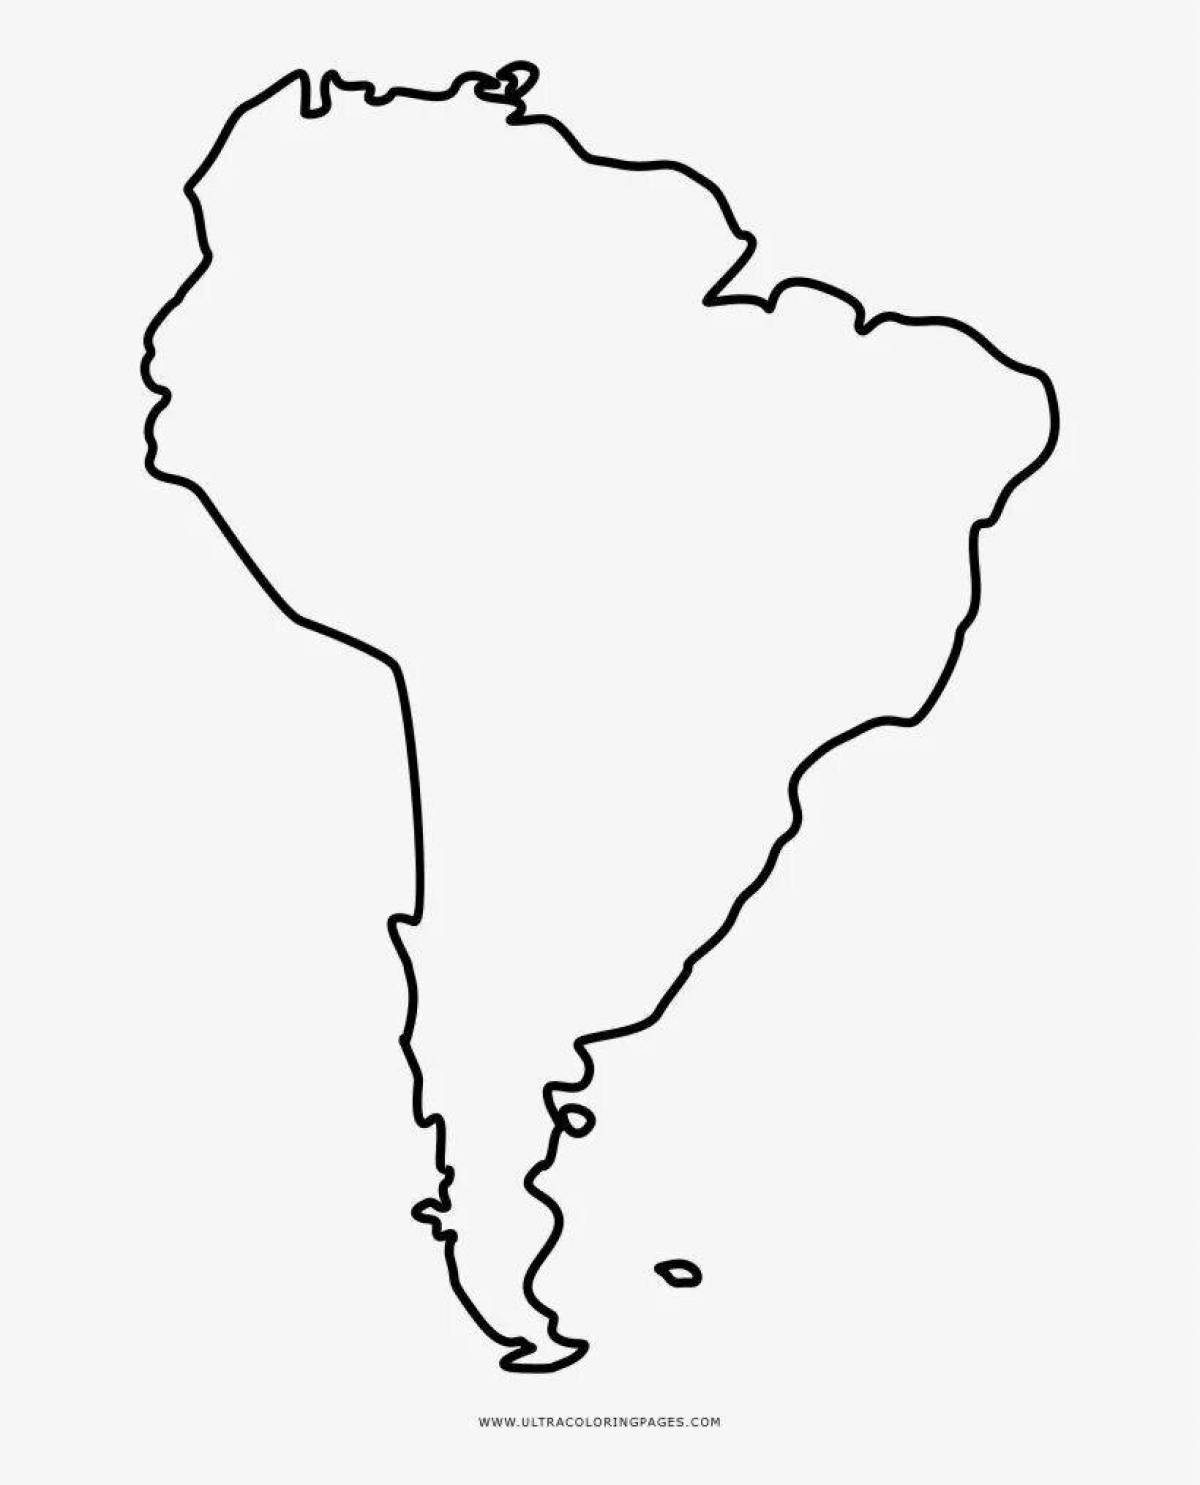 Материк Южная Америка контурная карта